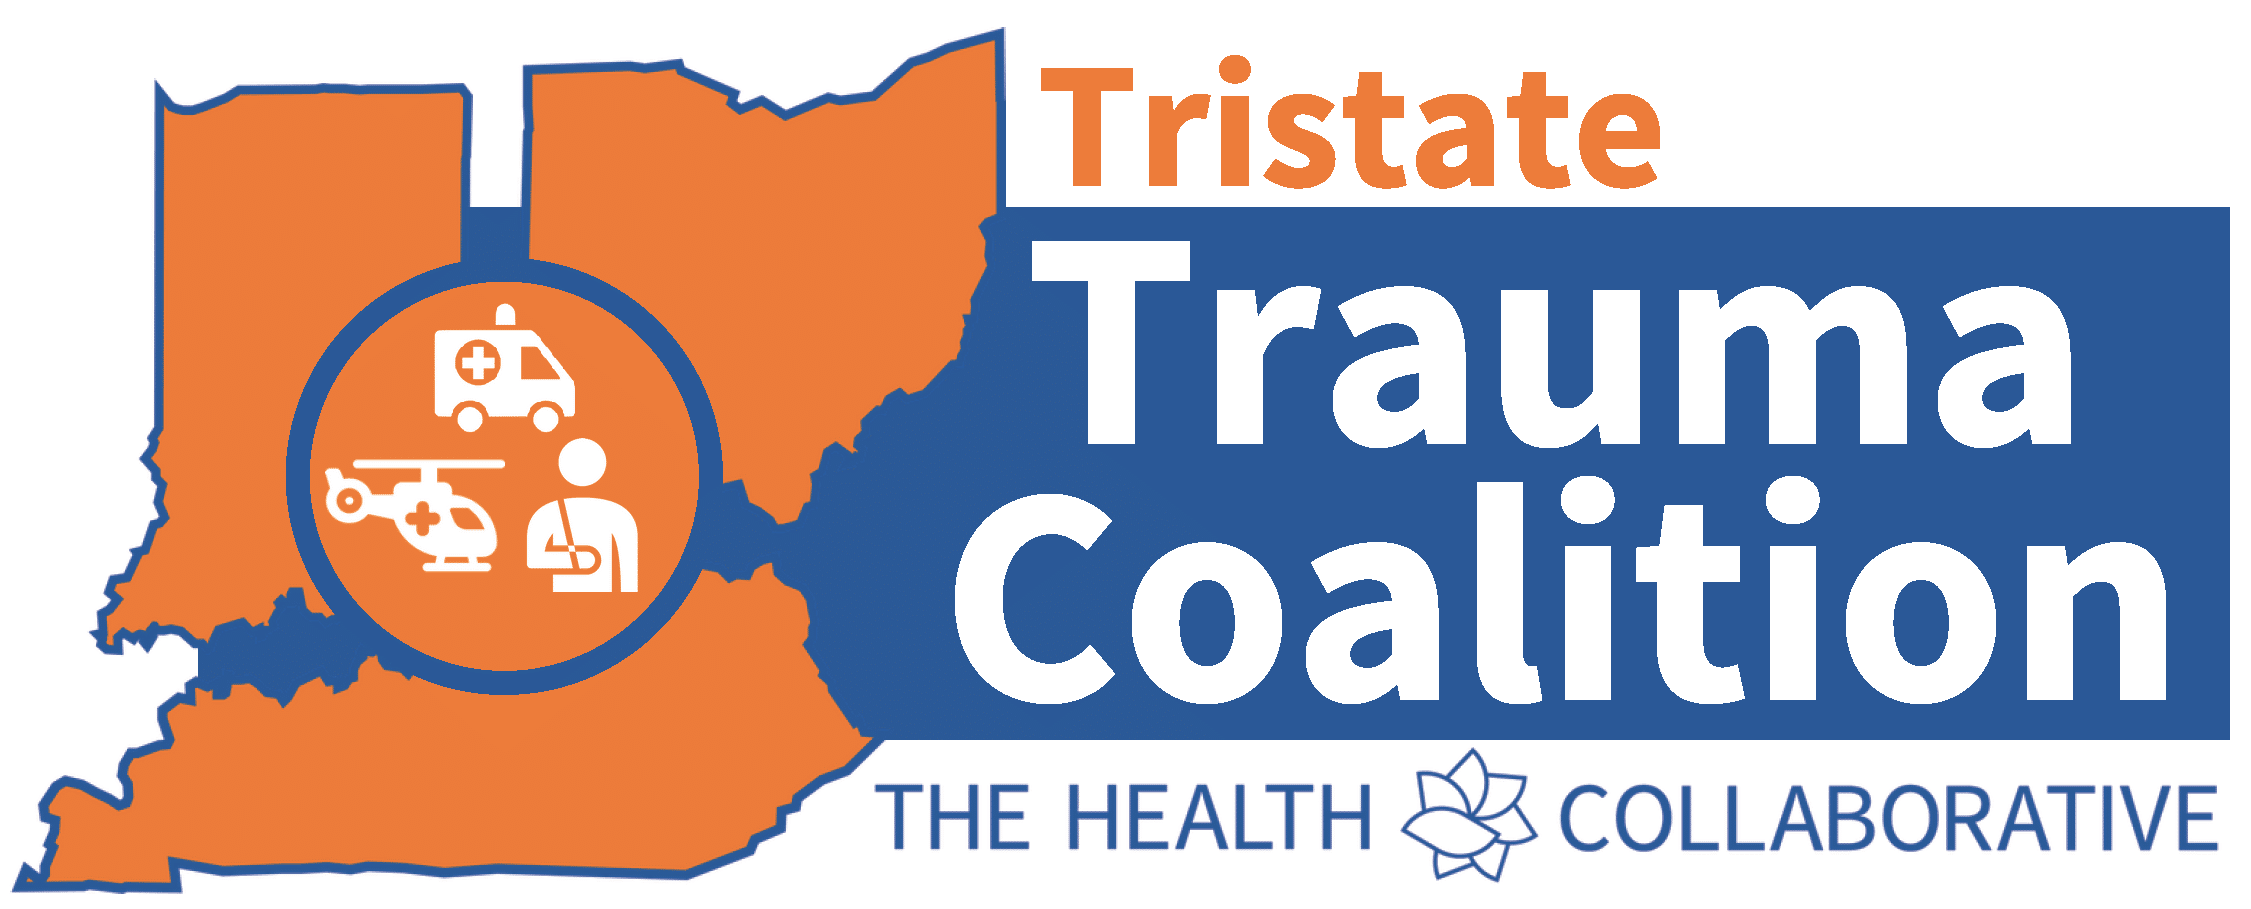 Tristate Trauma Coalition